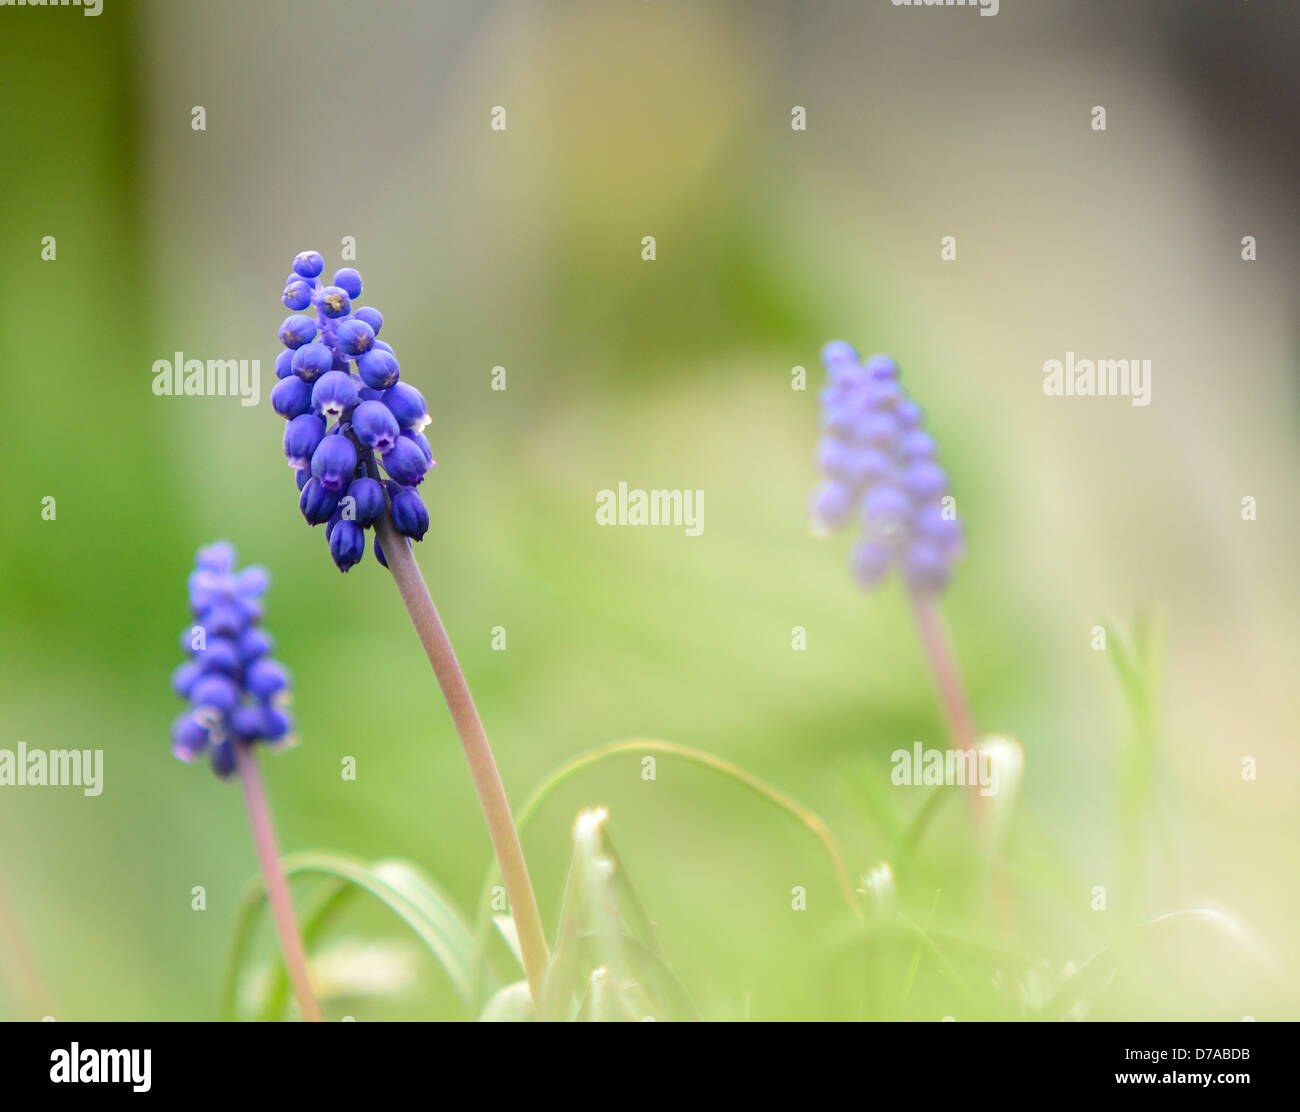 Plan Macro sur le ressort (muscari bleu Hyacinth). Banque D'Images